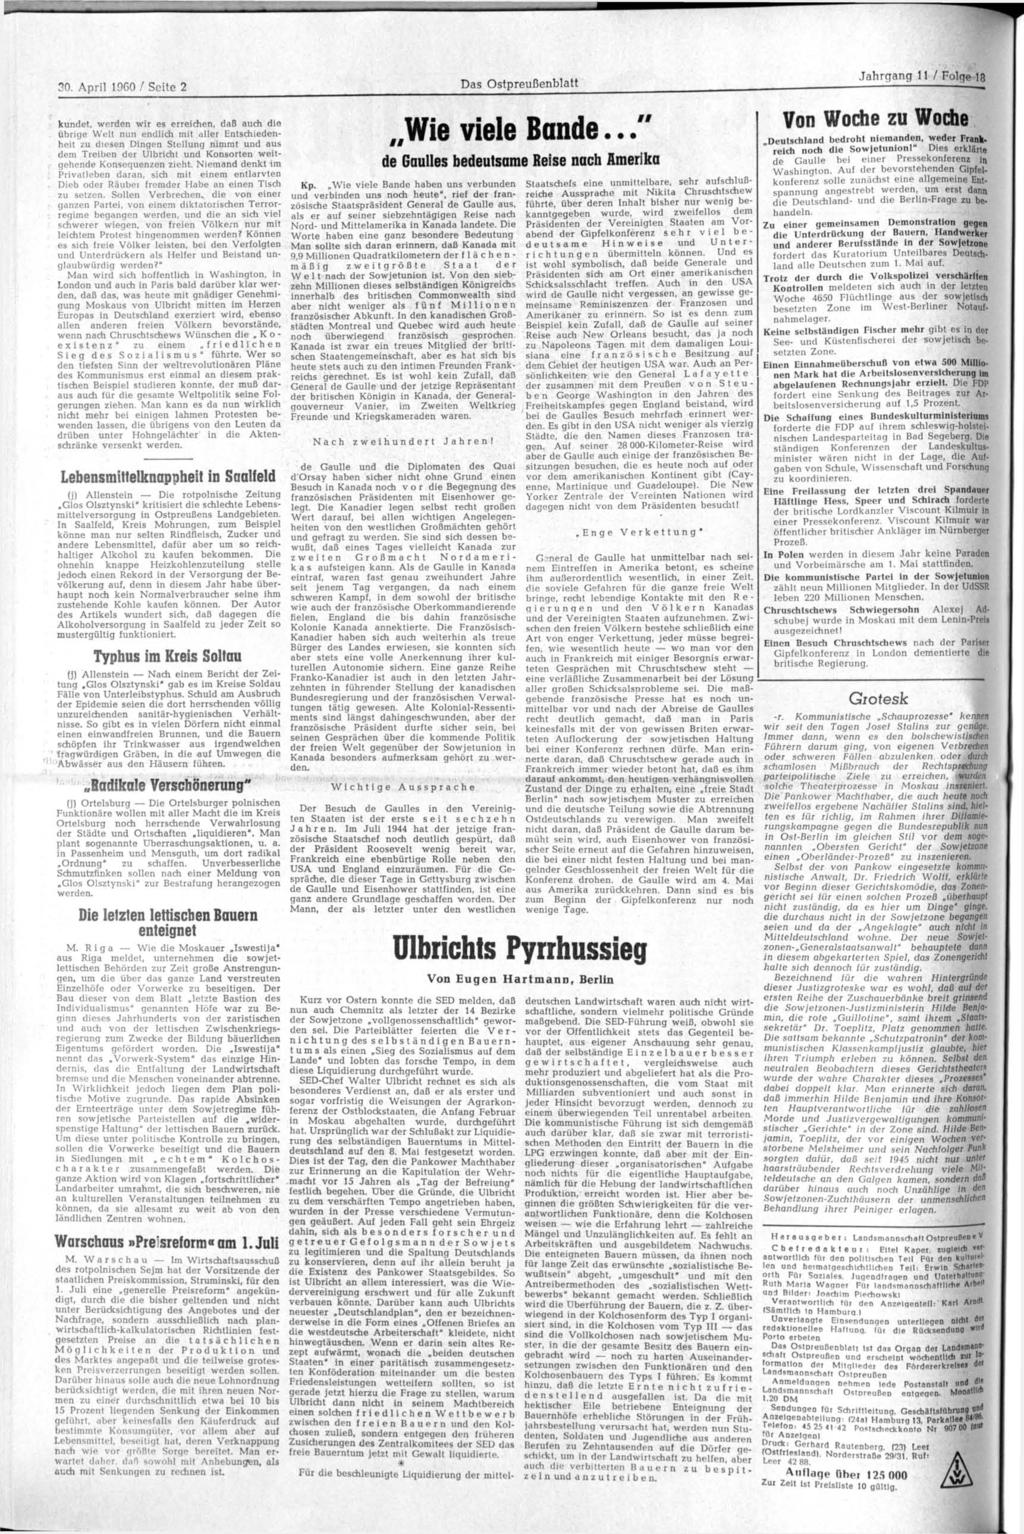 30. April 1960 / Seite 2 Das Ostpreußenblatt Jahrgang 11 / Folge 18 kündet, werden wir es erreichen, daß auch die übrige Welt nun endlich mit aller Entschiedenheit zu diesen Dingen Stellung nimmt und